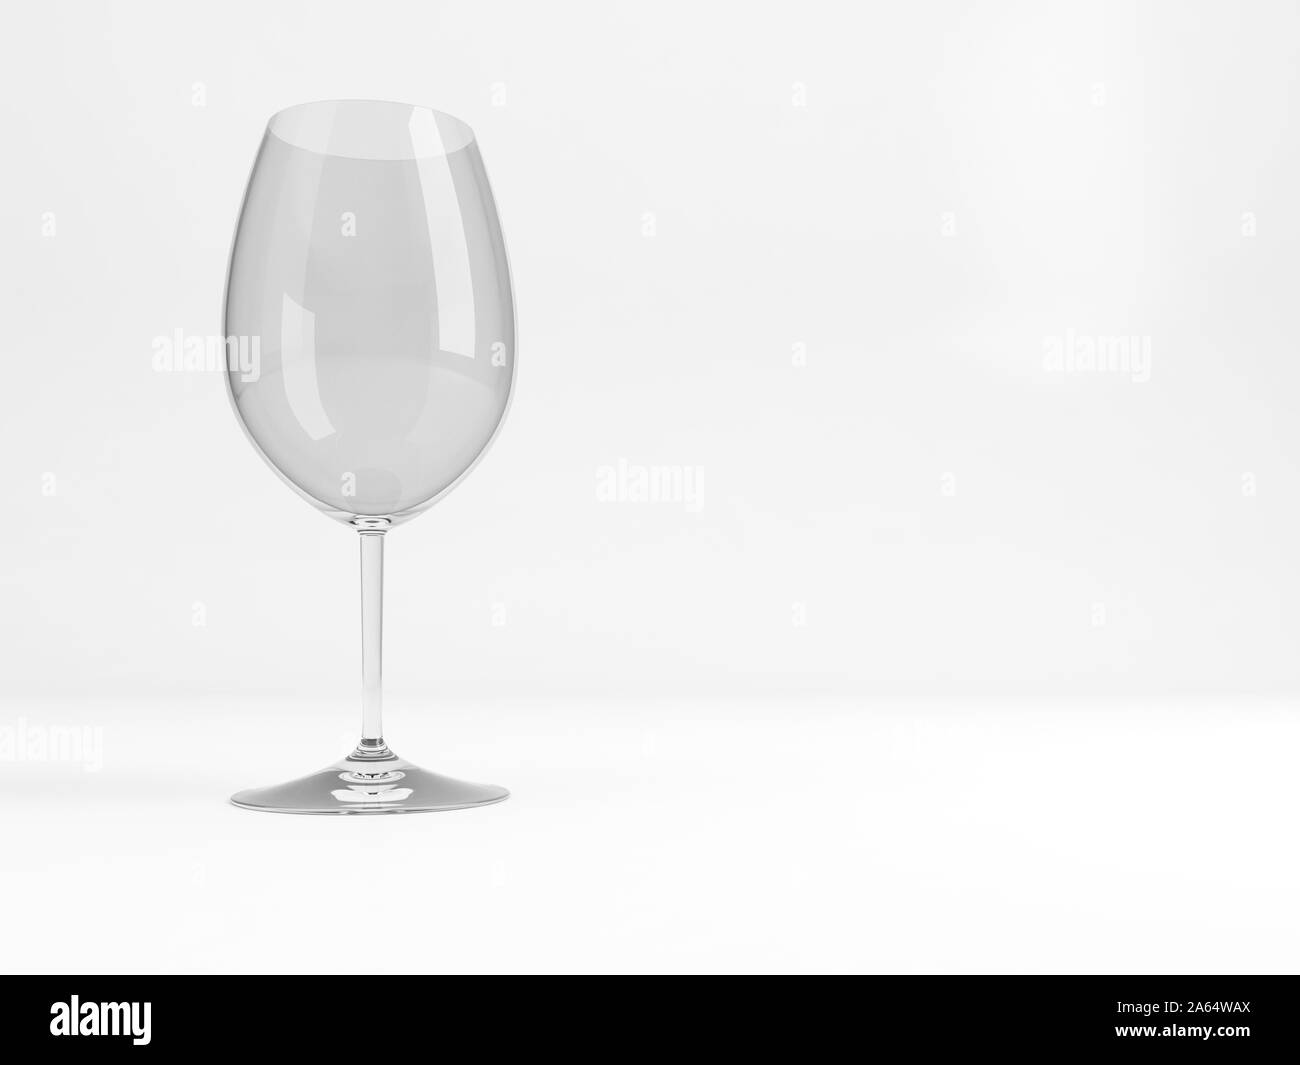 Vuoti di grandi dimensioni standard il vino rosso di Bordeaux di vetro con una morbida ombra si erge su sfondo bianco, rendering 3D illustrazione Foto Stock